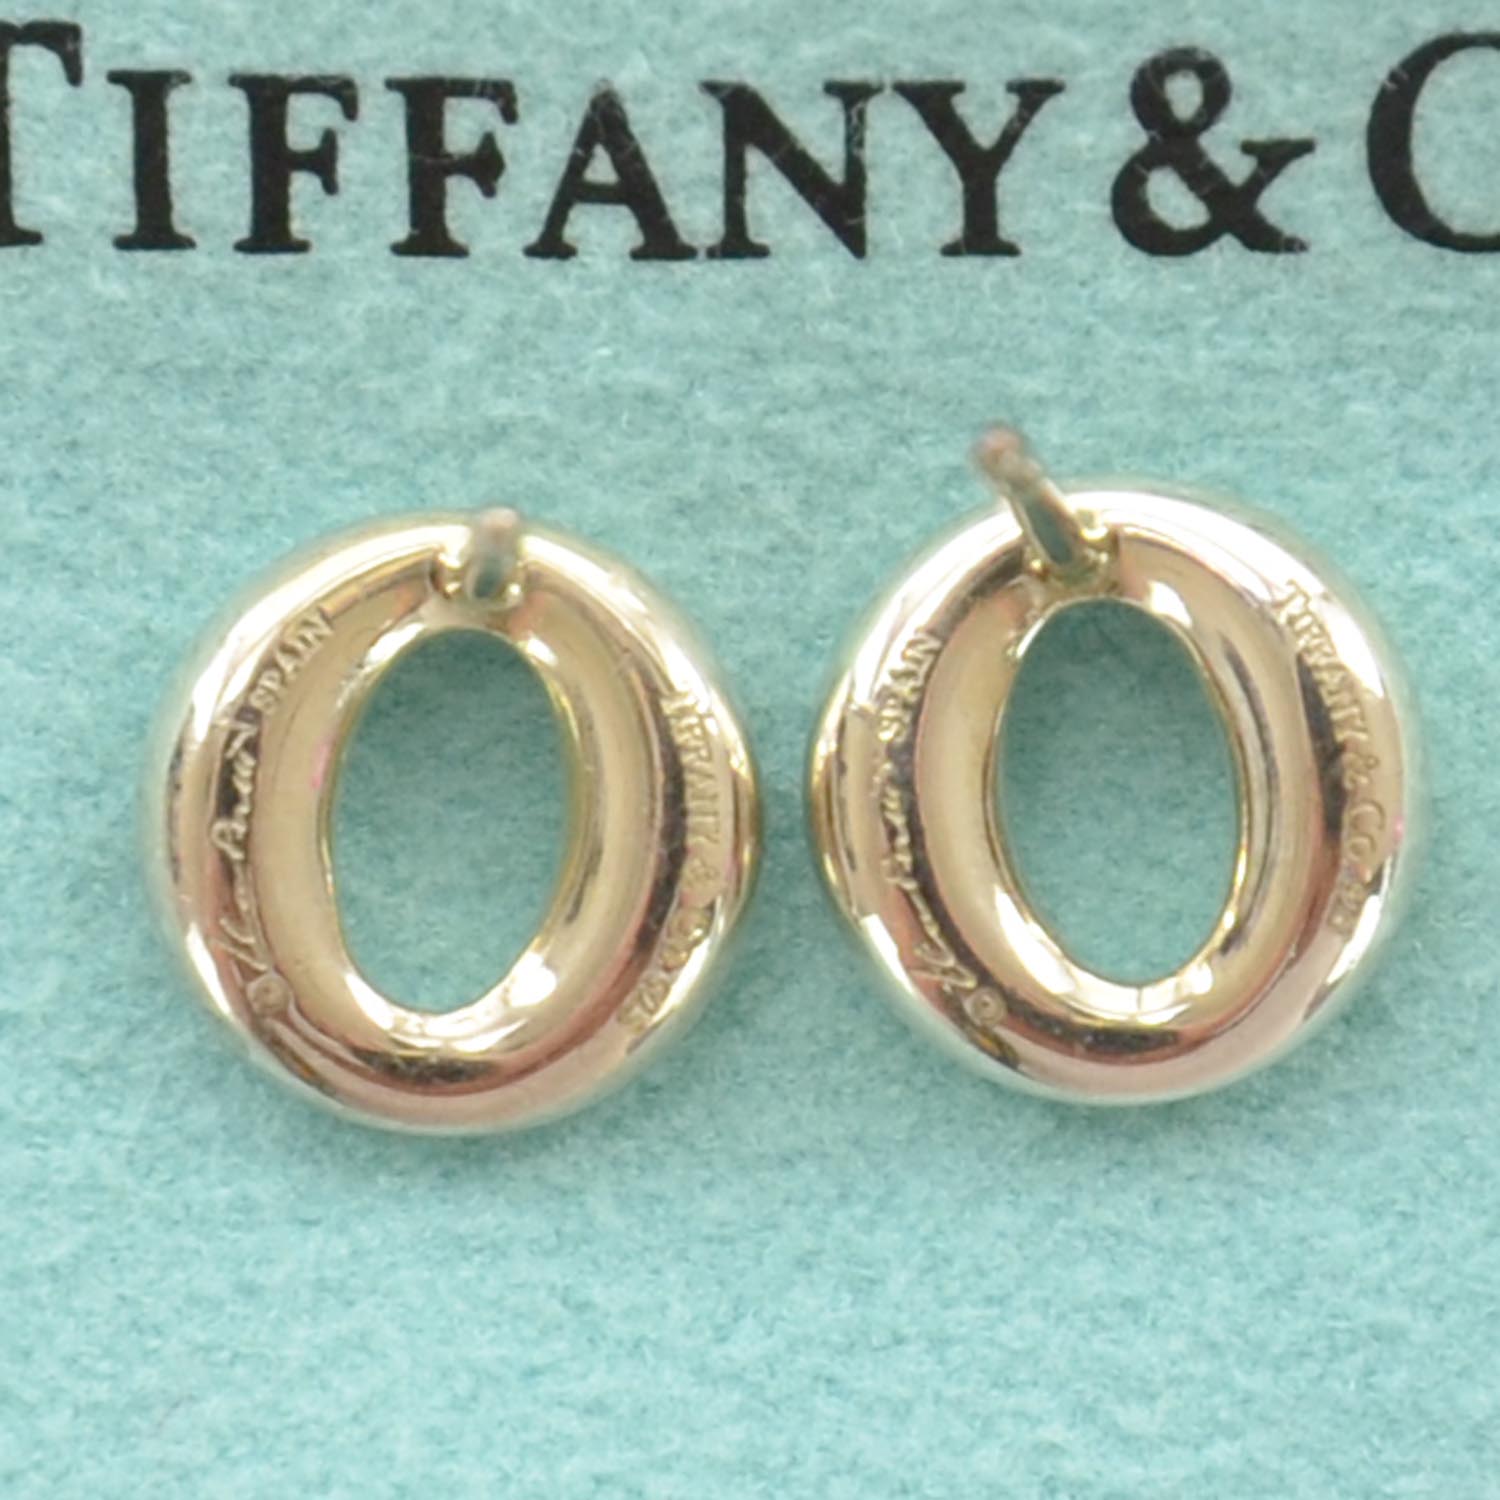 tiffany sevillana earrings